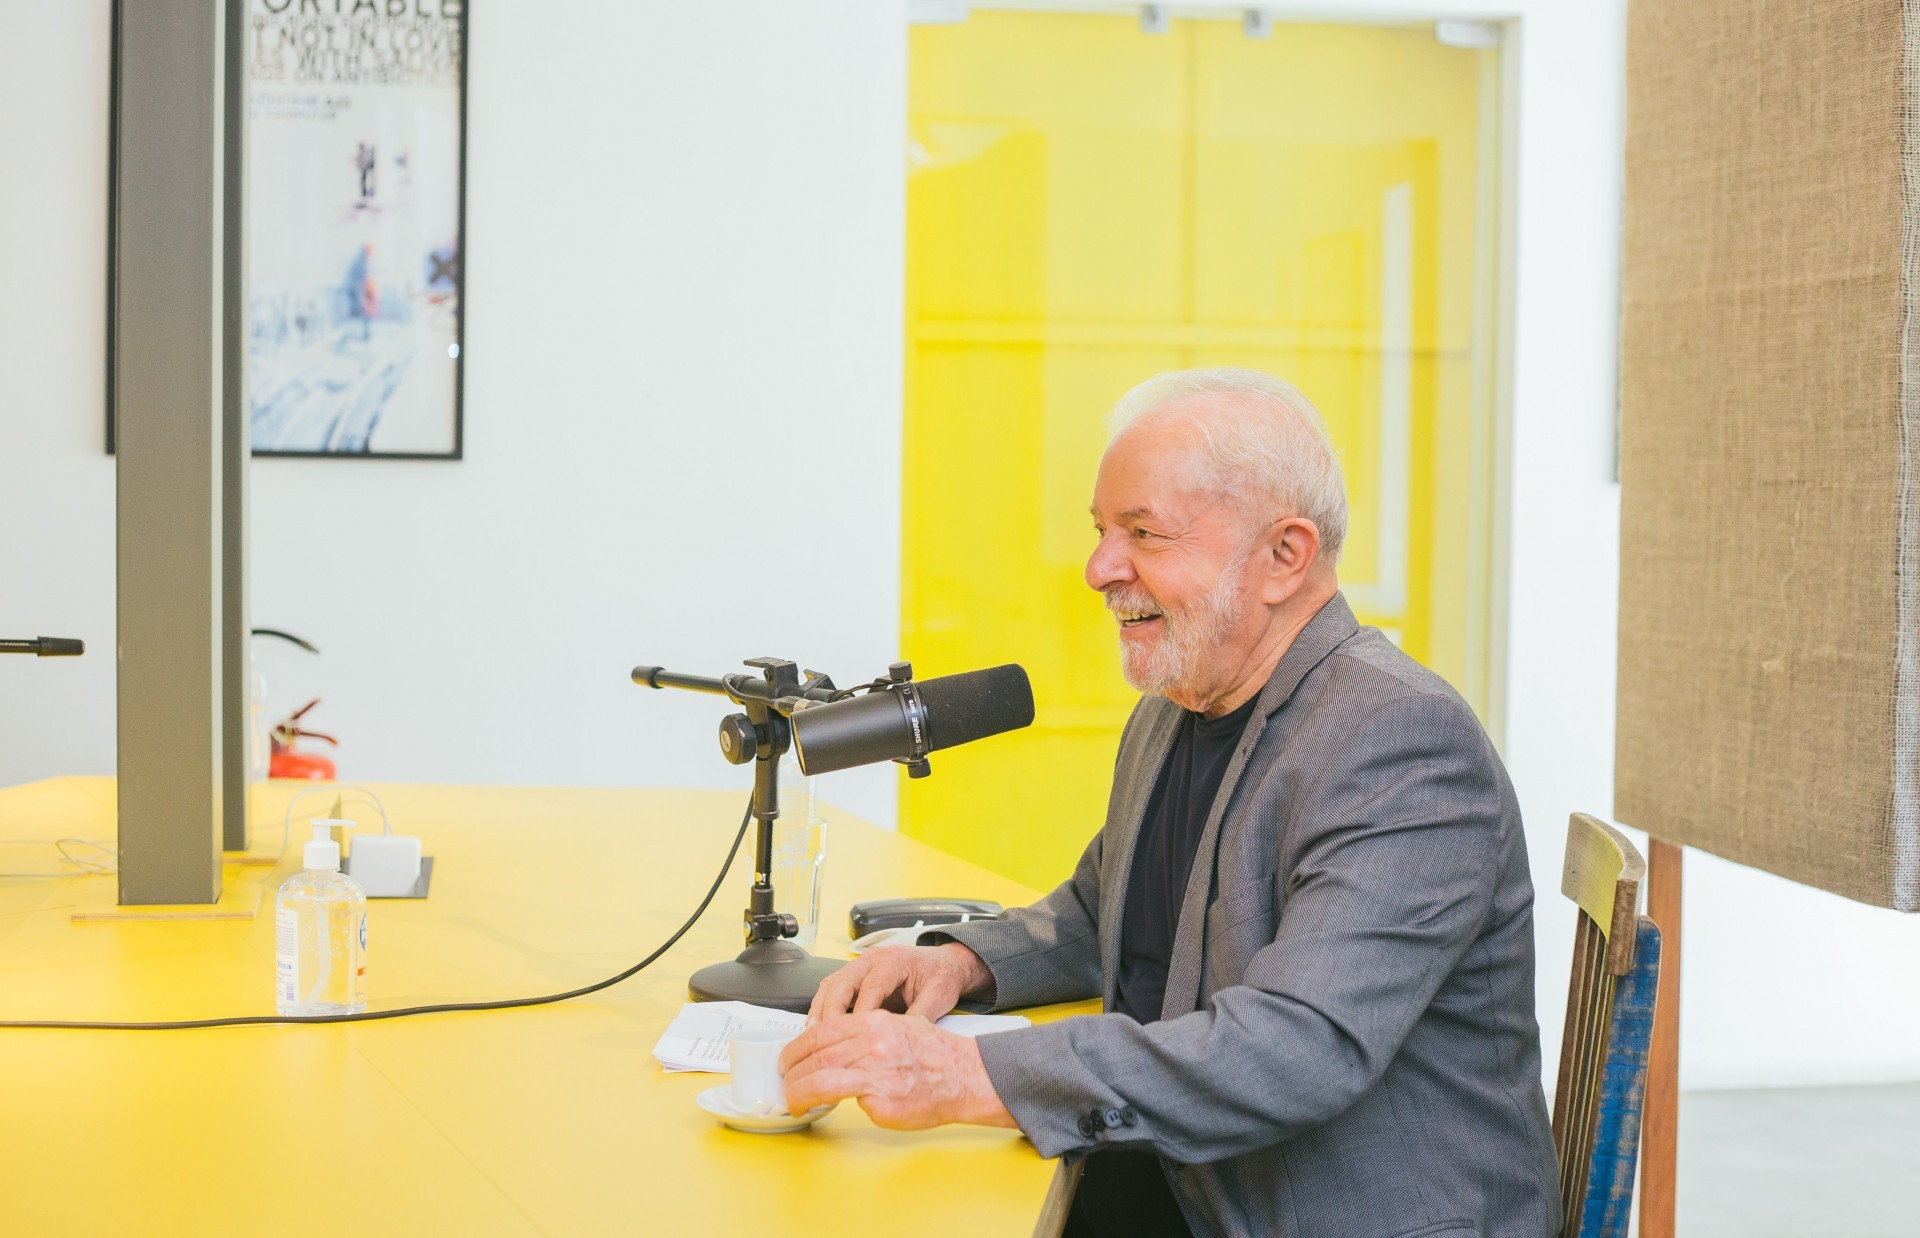 Mano Brown recebe Lula em episódio do podcast 'Mano a Mano', do Spotify (Foto: Reprodução/ Twitter @manobrown/ Jef Delgado)